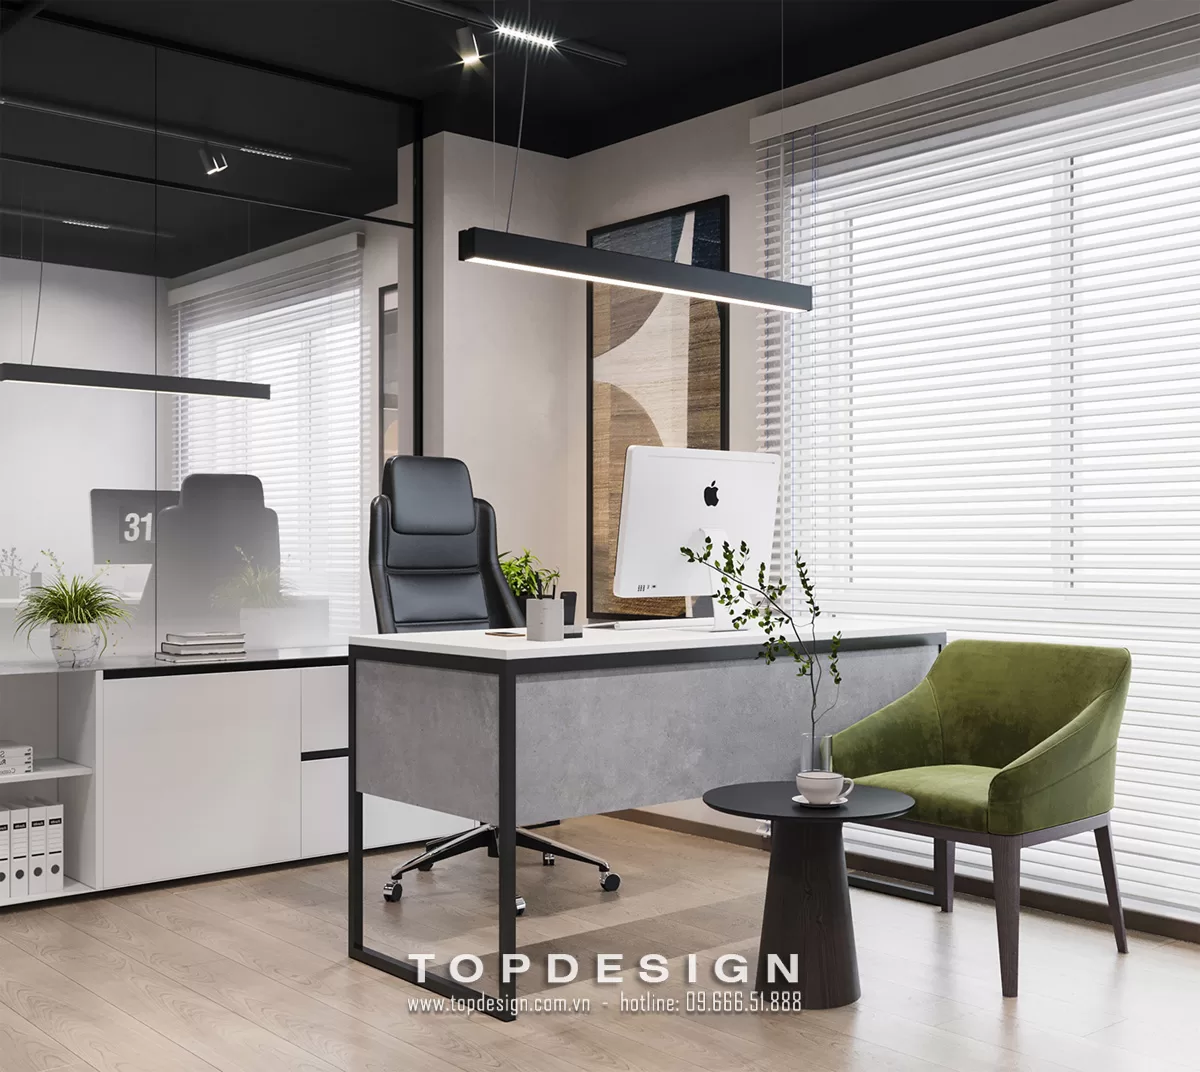 7. Phí thiết kế văn phòng - topdesign